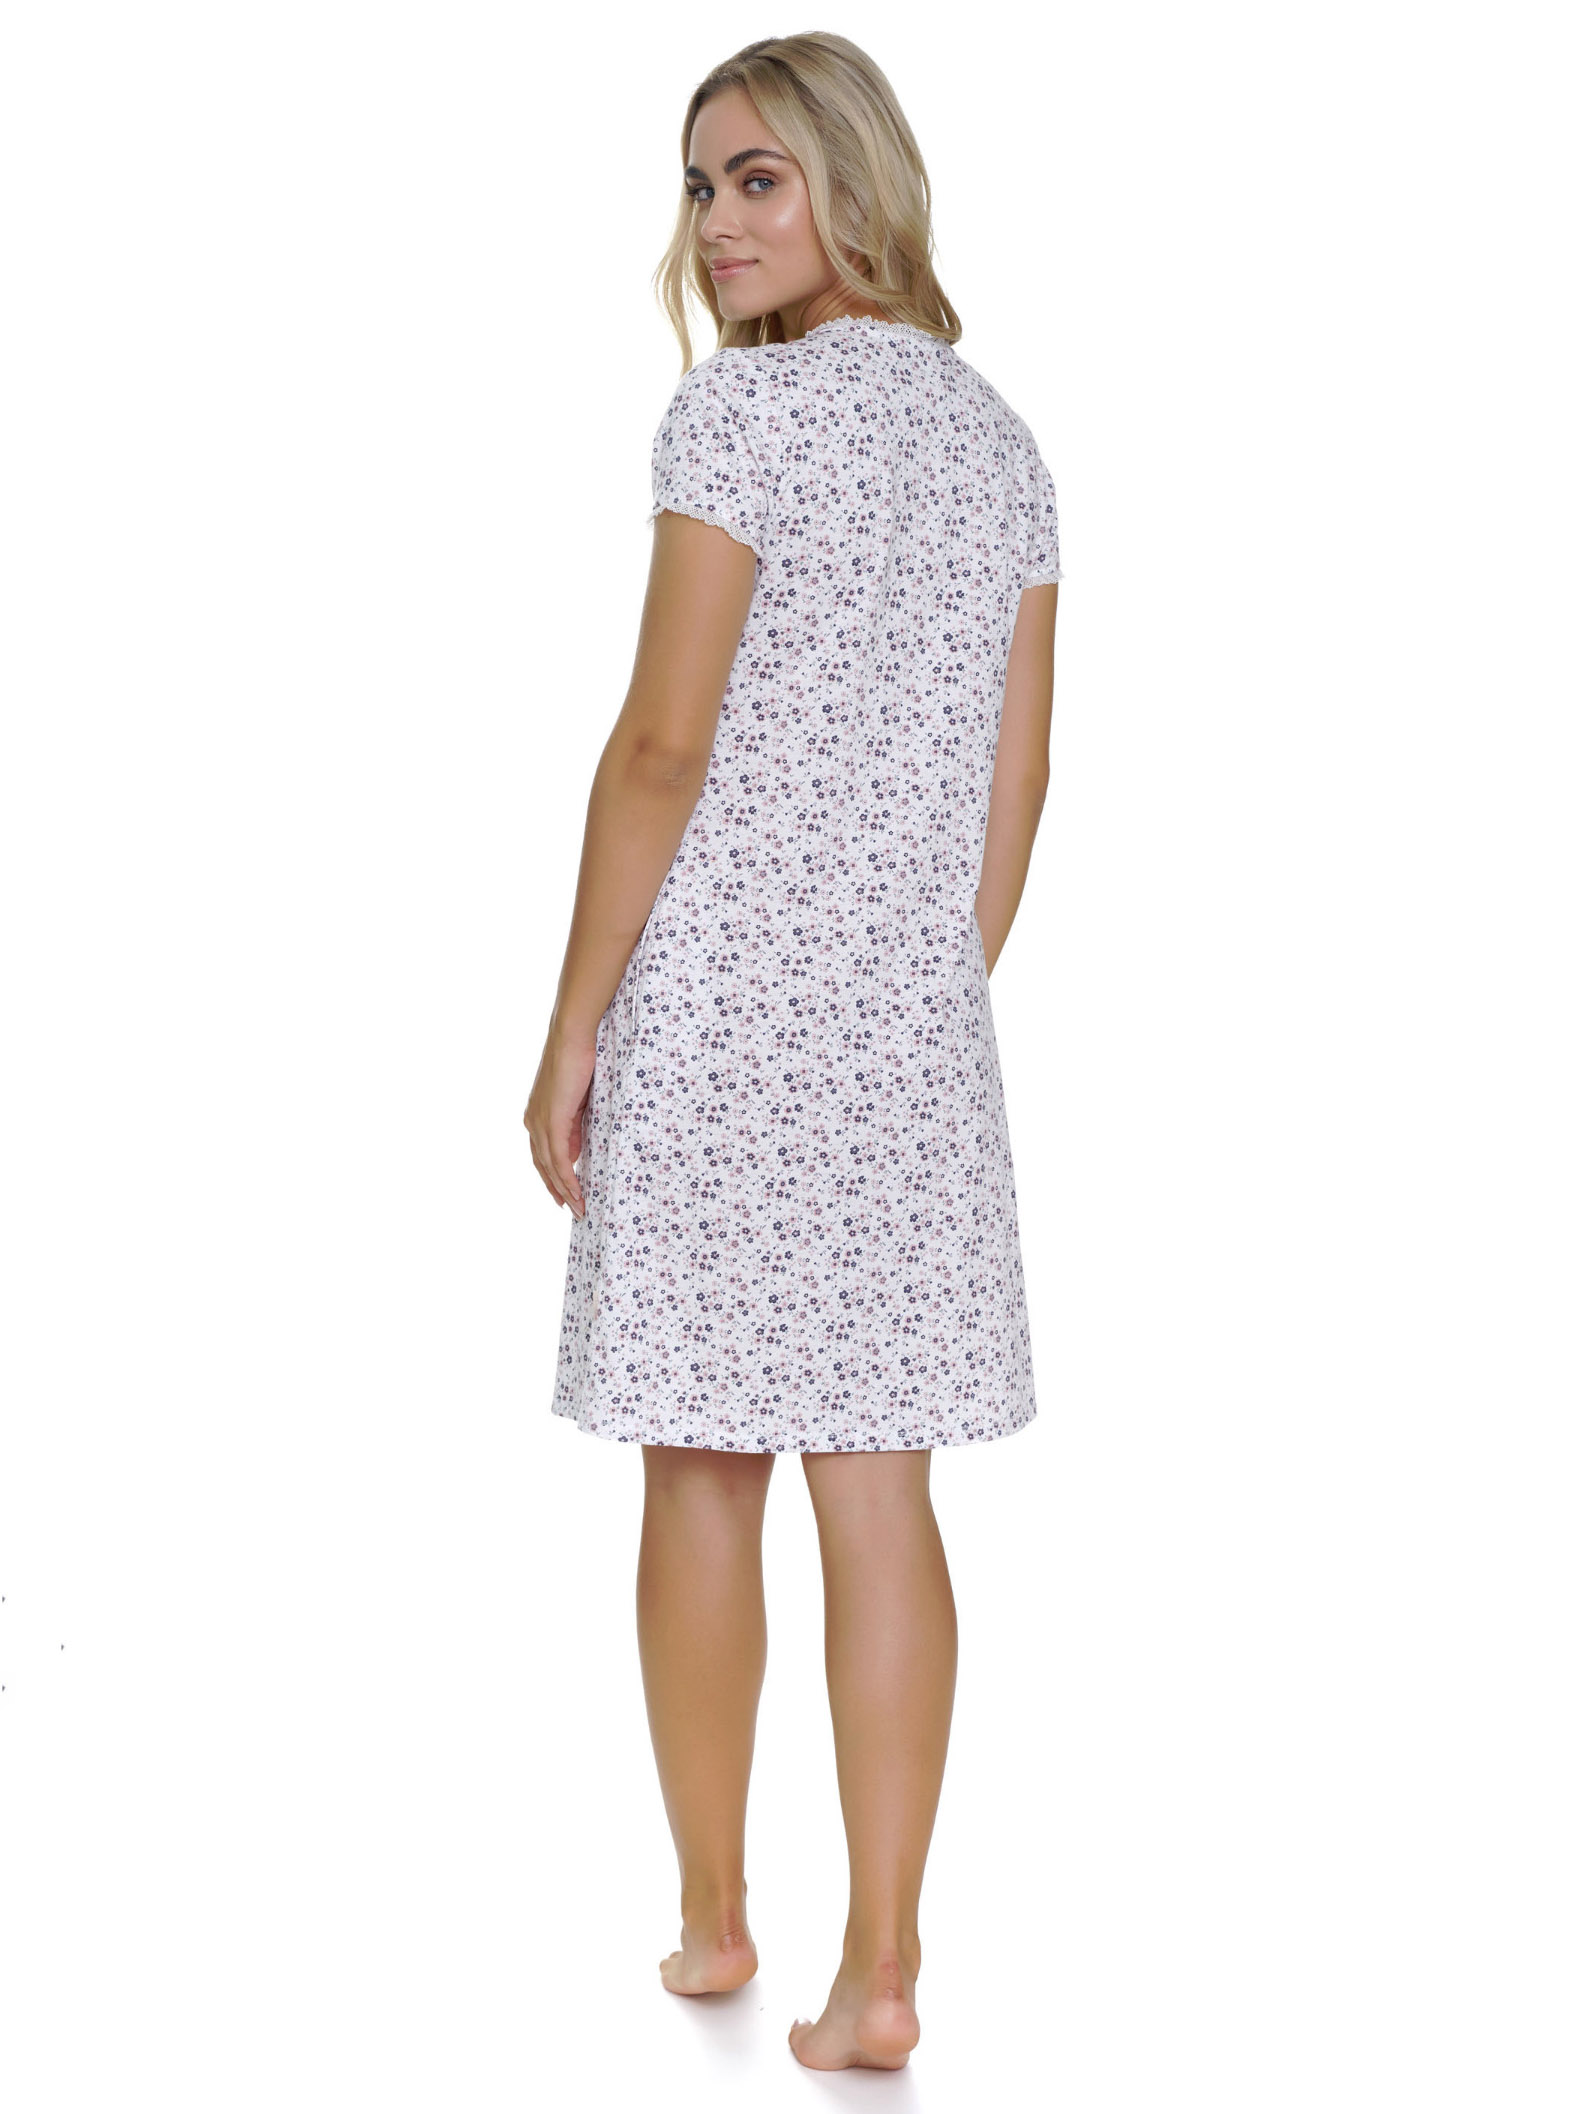 Элегантная женская ночная рубашка с карманами / домашнее платье длиной до середины колена с цветочным узором, застёжкой на кнопки и нежным кружевным декором Doctor Nap TCB 5335 #2